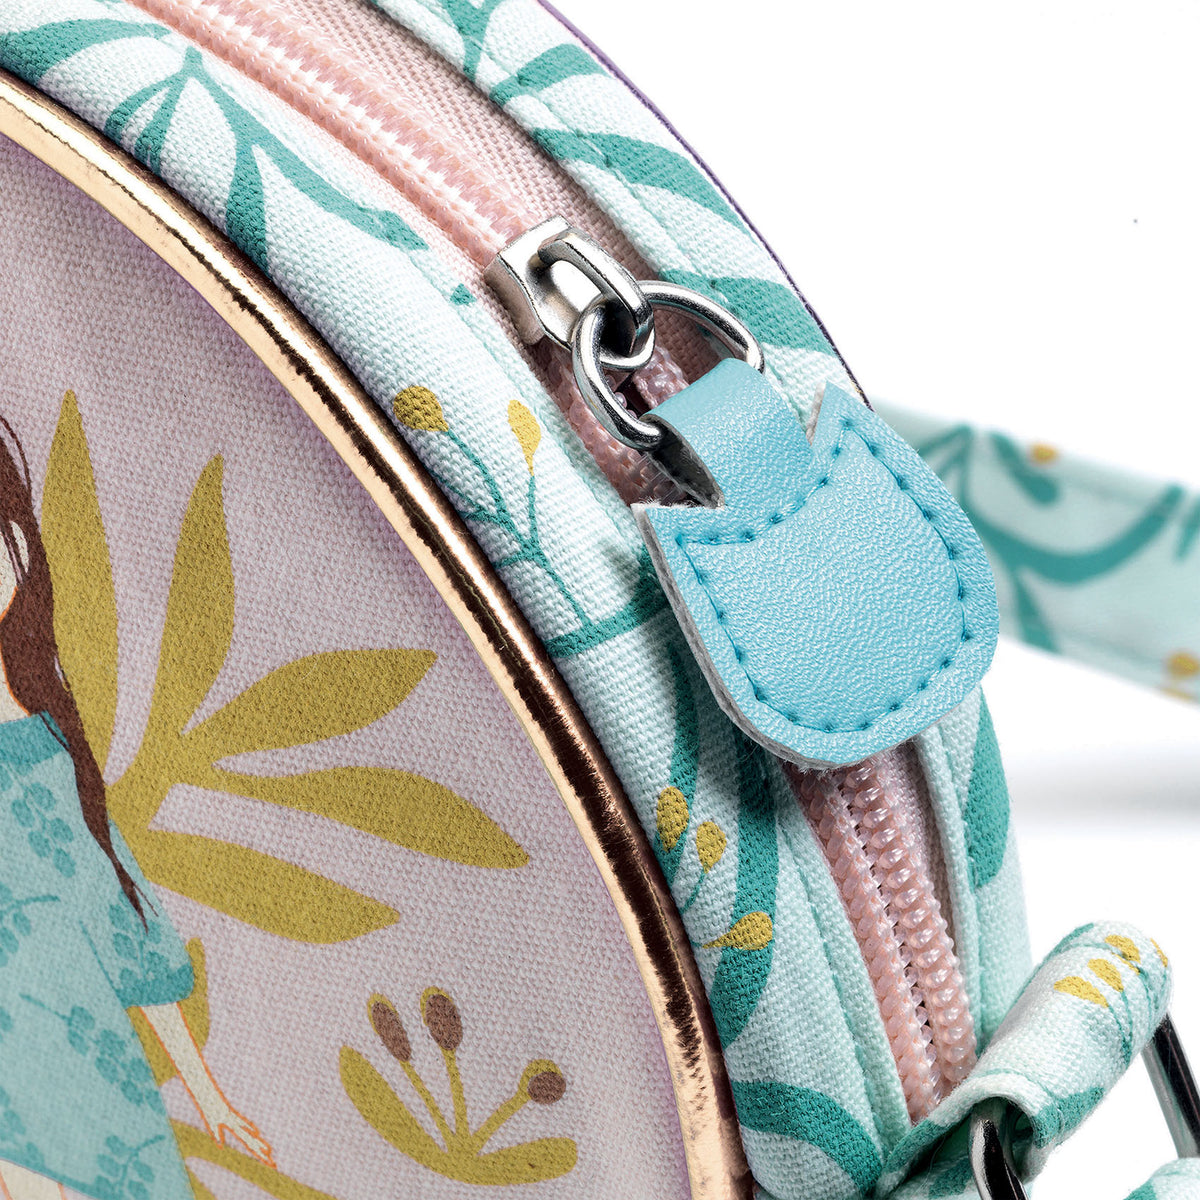 Sehr elegante kleine Handtasche, mit feinen Motiven bedruckt.